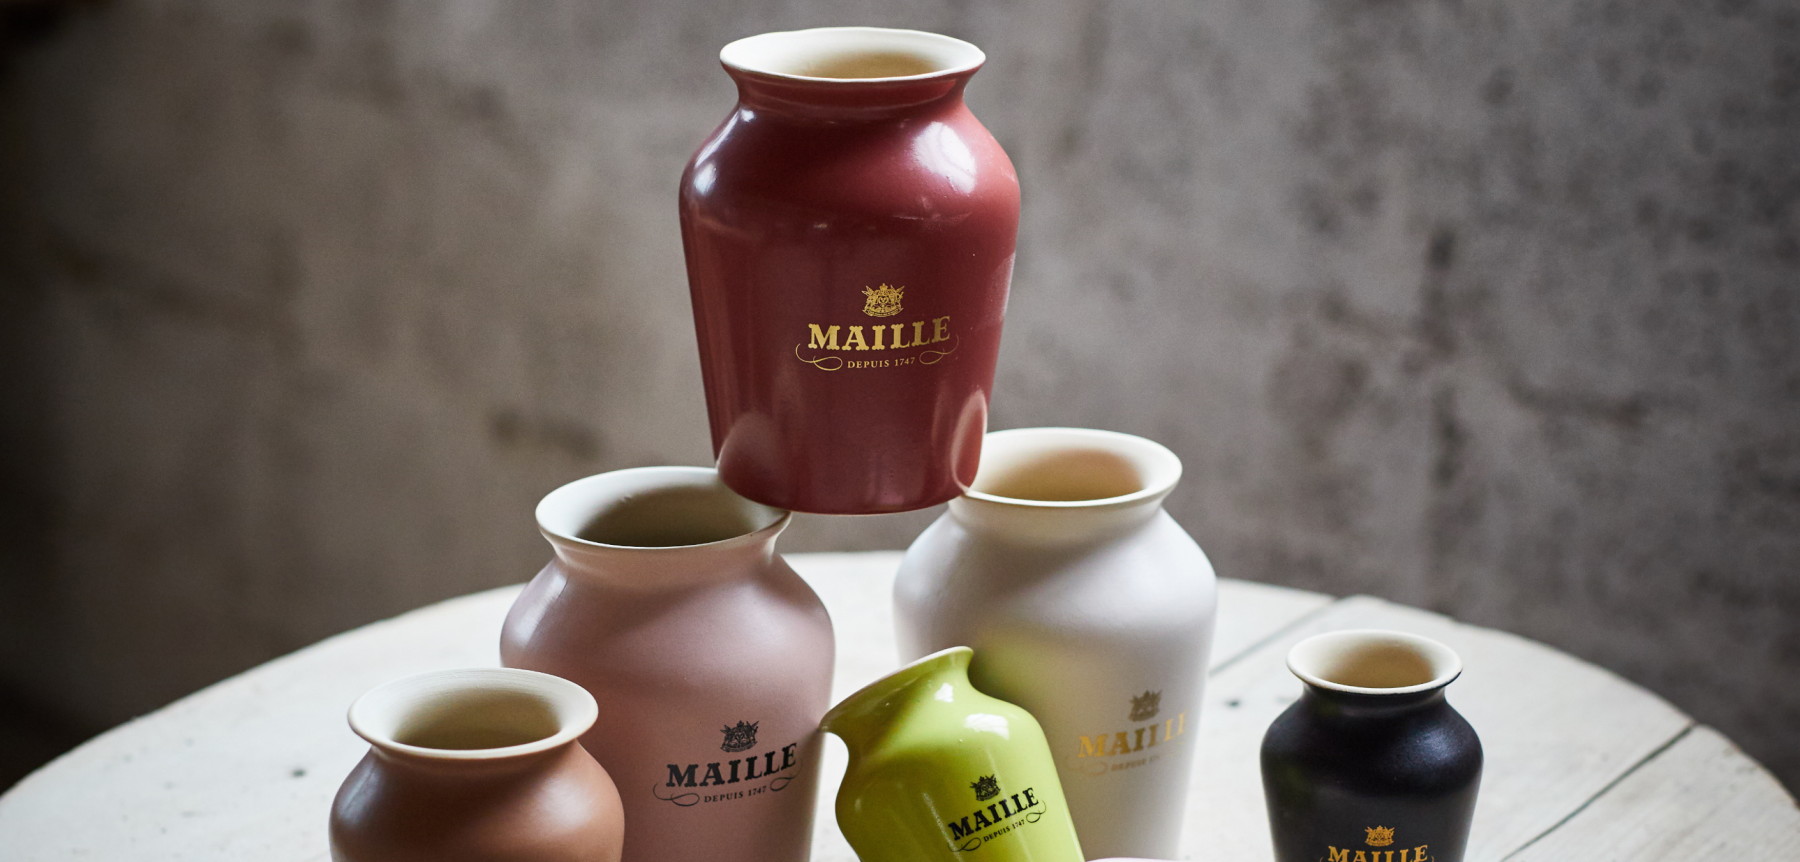 Ce lien va ouvrir une nouvelle fenêtre: Maille Craftmanship of the Jar